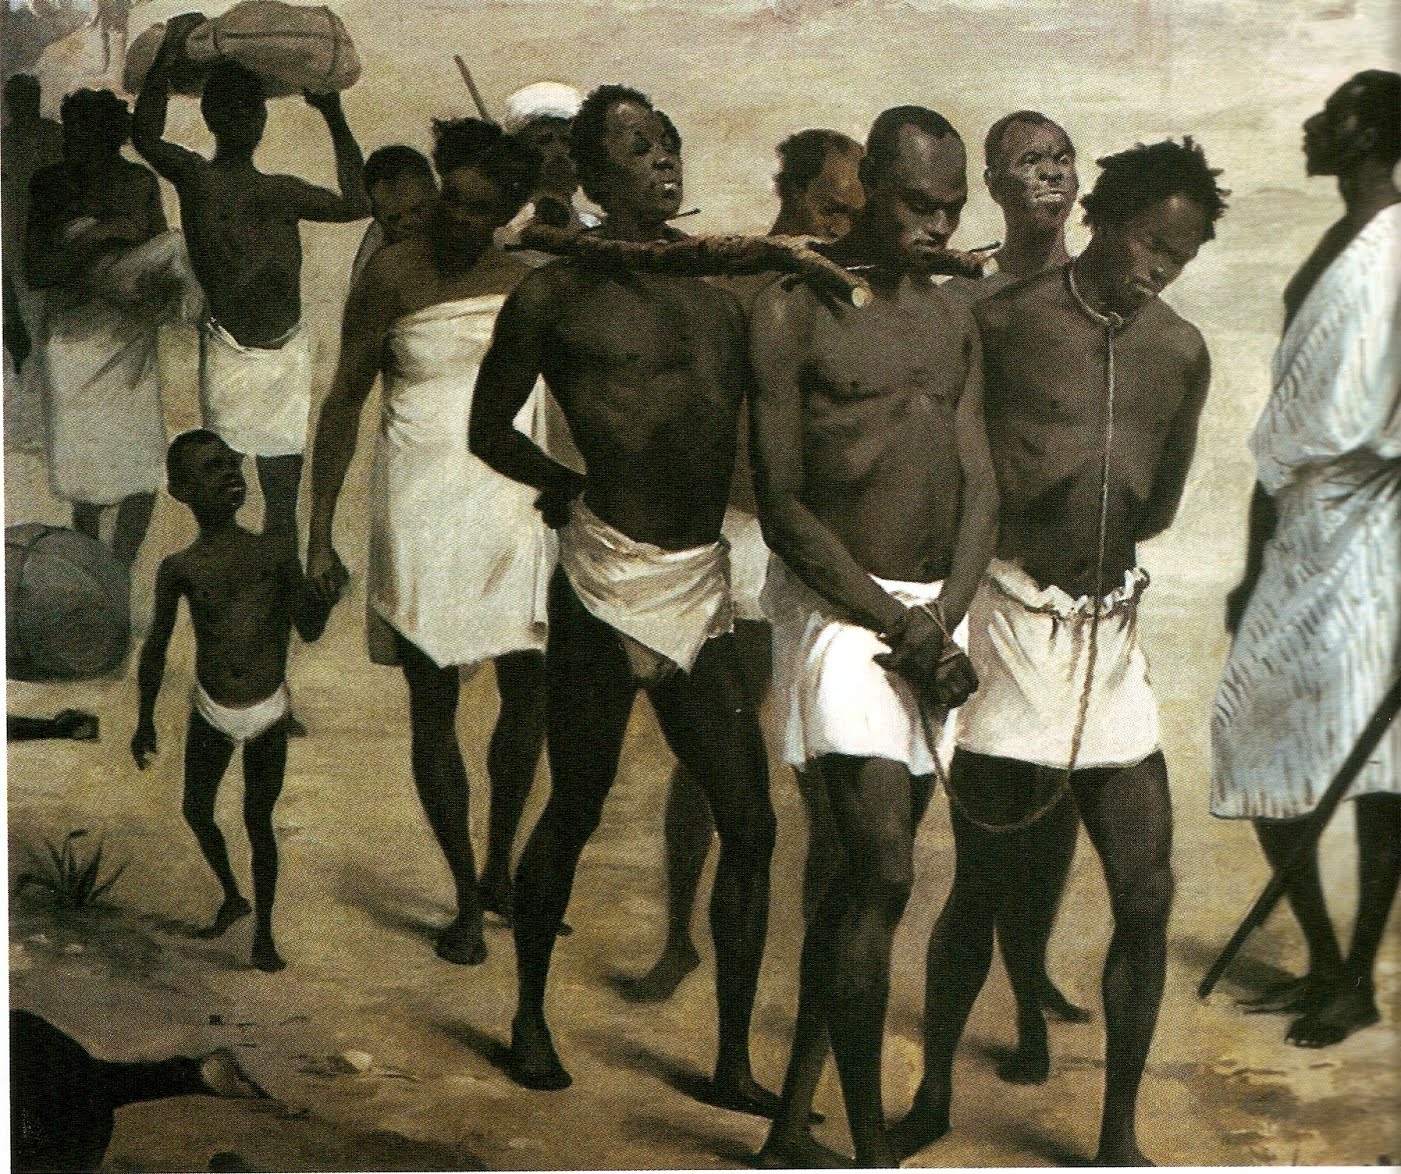 Понравилась неграм. Работорговля в Африке 19 век. Караван невольников Африка. Работорговля Африки 18 века. Африка 19 века работорговля детьми.